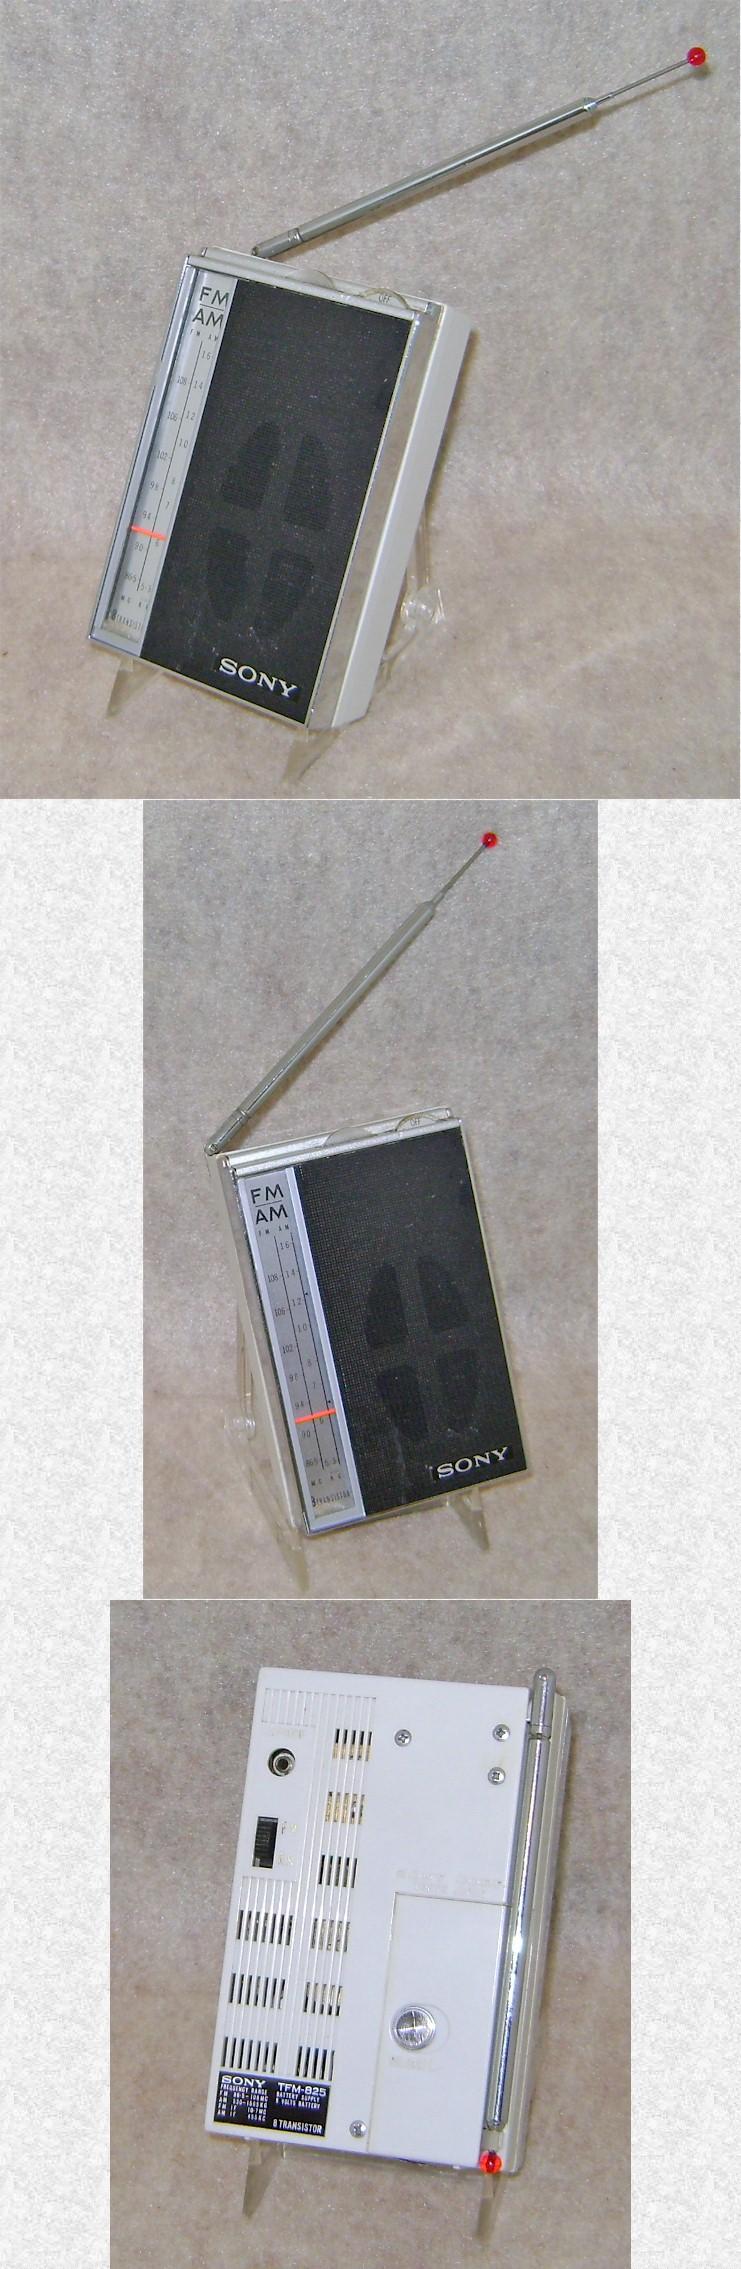 Sony TFM-825 AM/FM Transistor